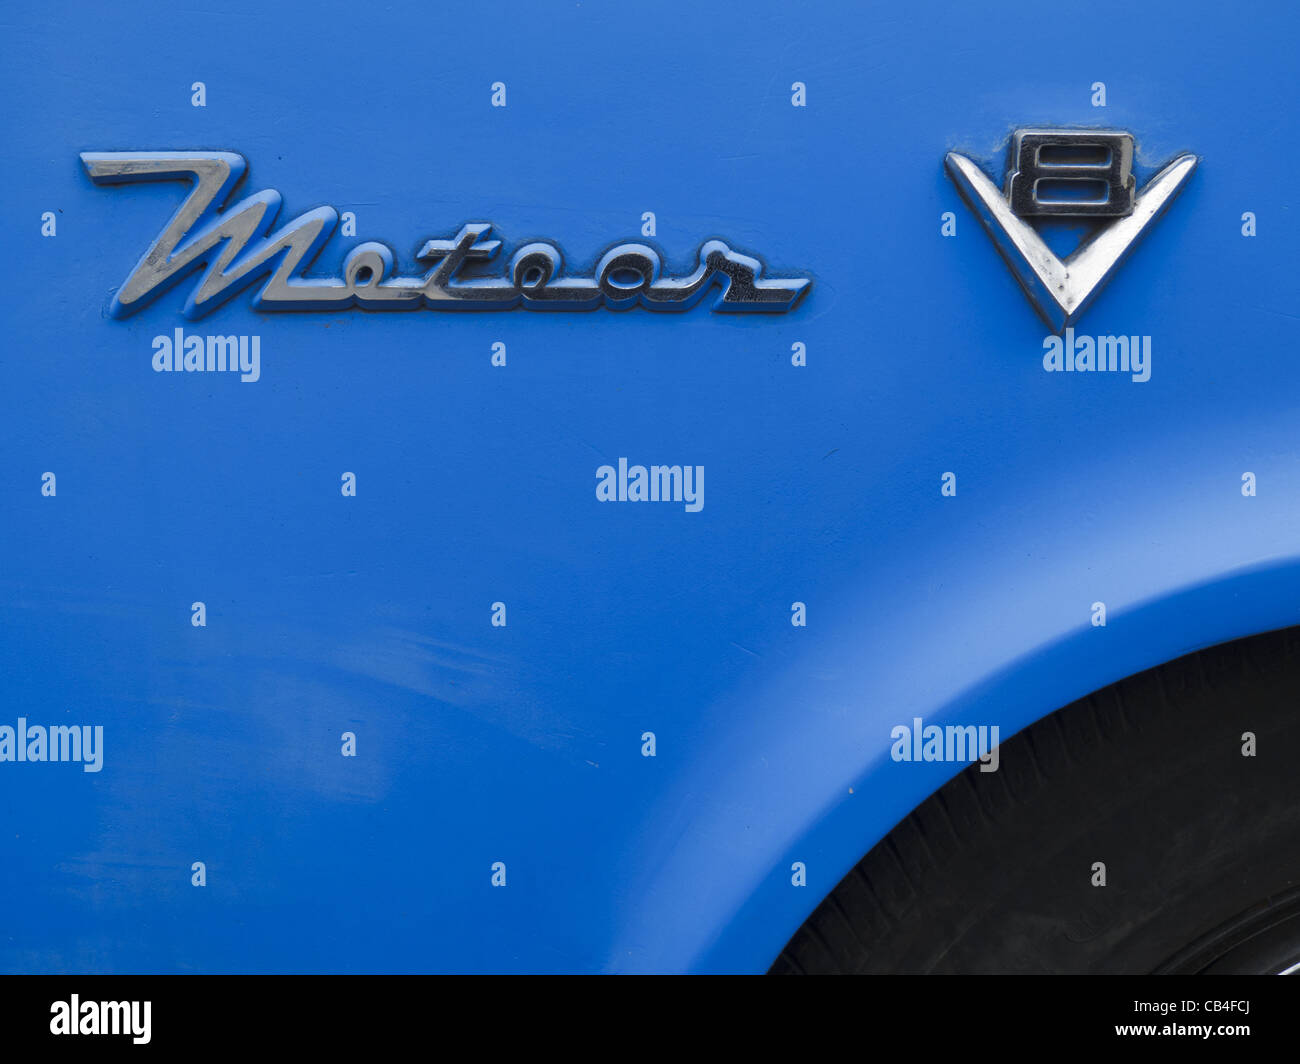 Dettaglio di un classico Meteor V8. Meteor era una marca di automobili offerti da Ford in Canada dal 1949 al 1976. Foto Stock